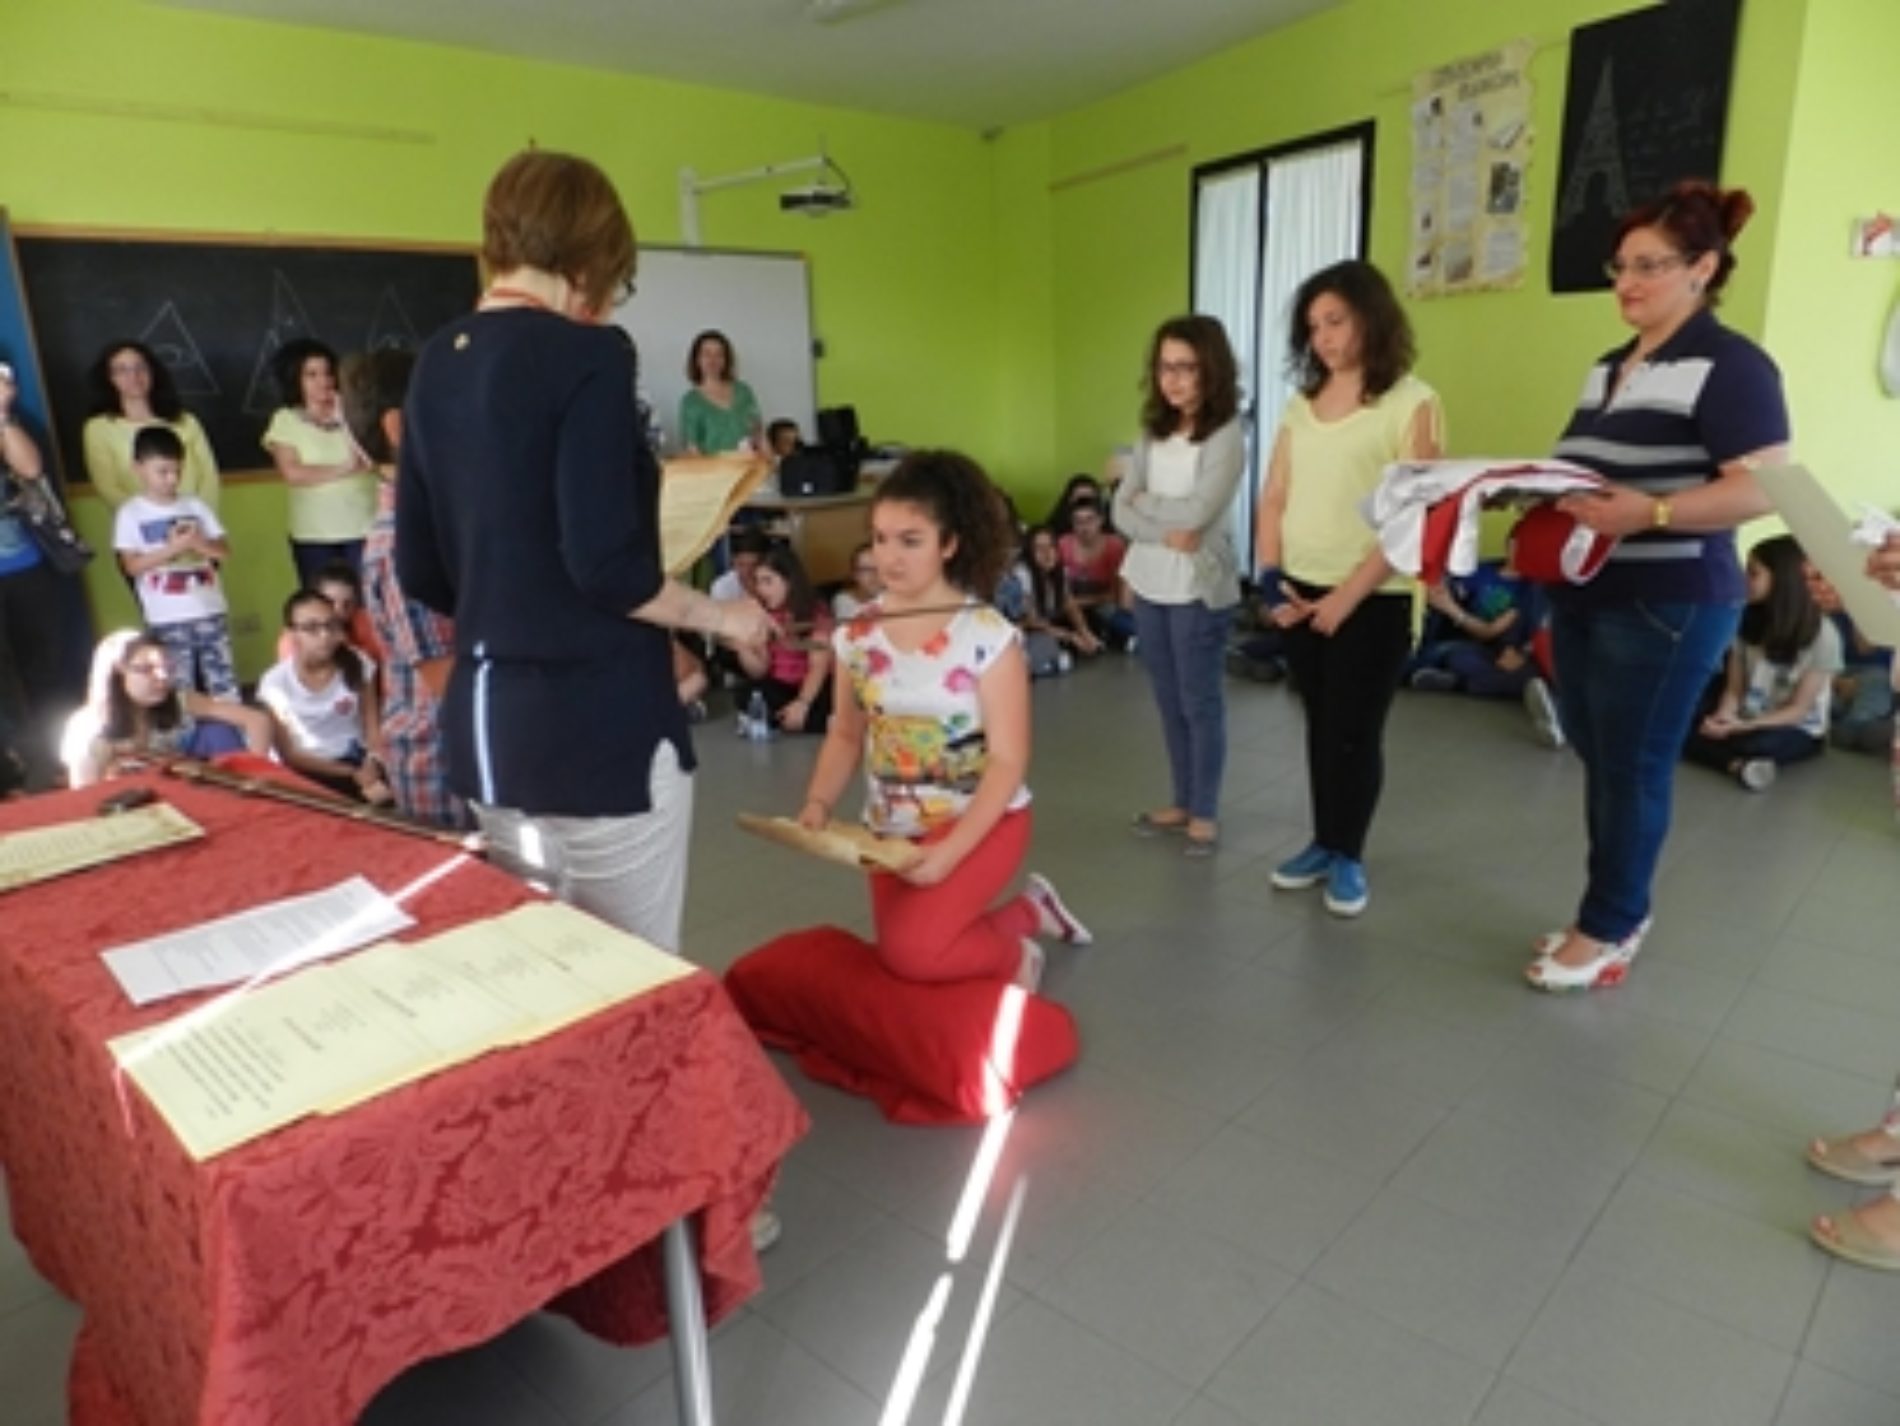 Conclusione del progetto “Vita da cavaliere” presso la scuola Don Milani